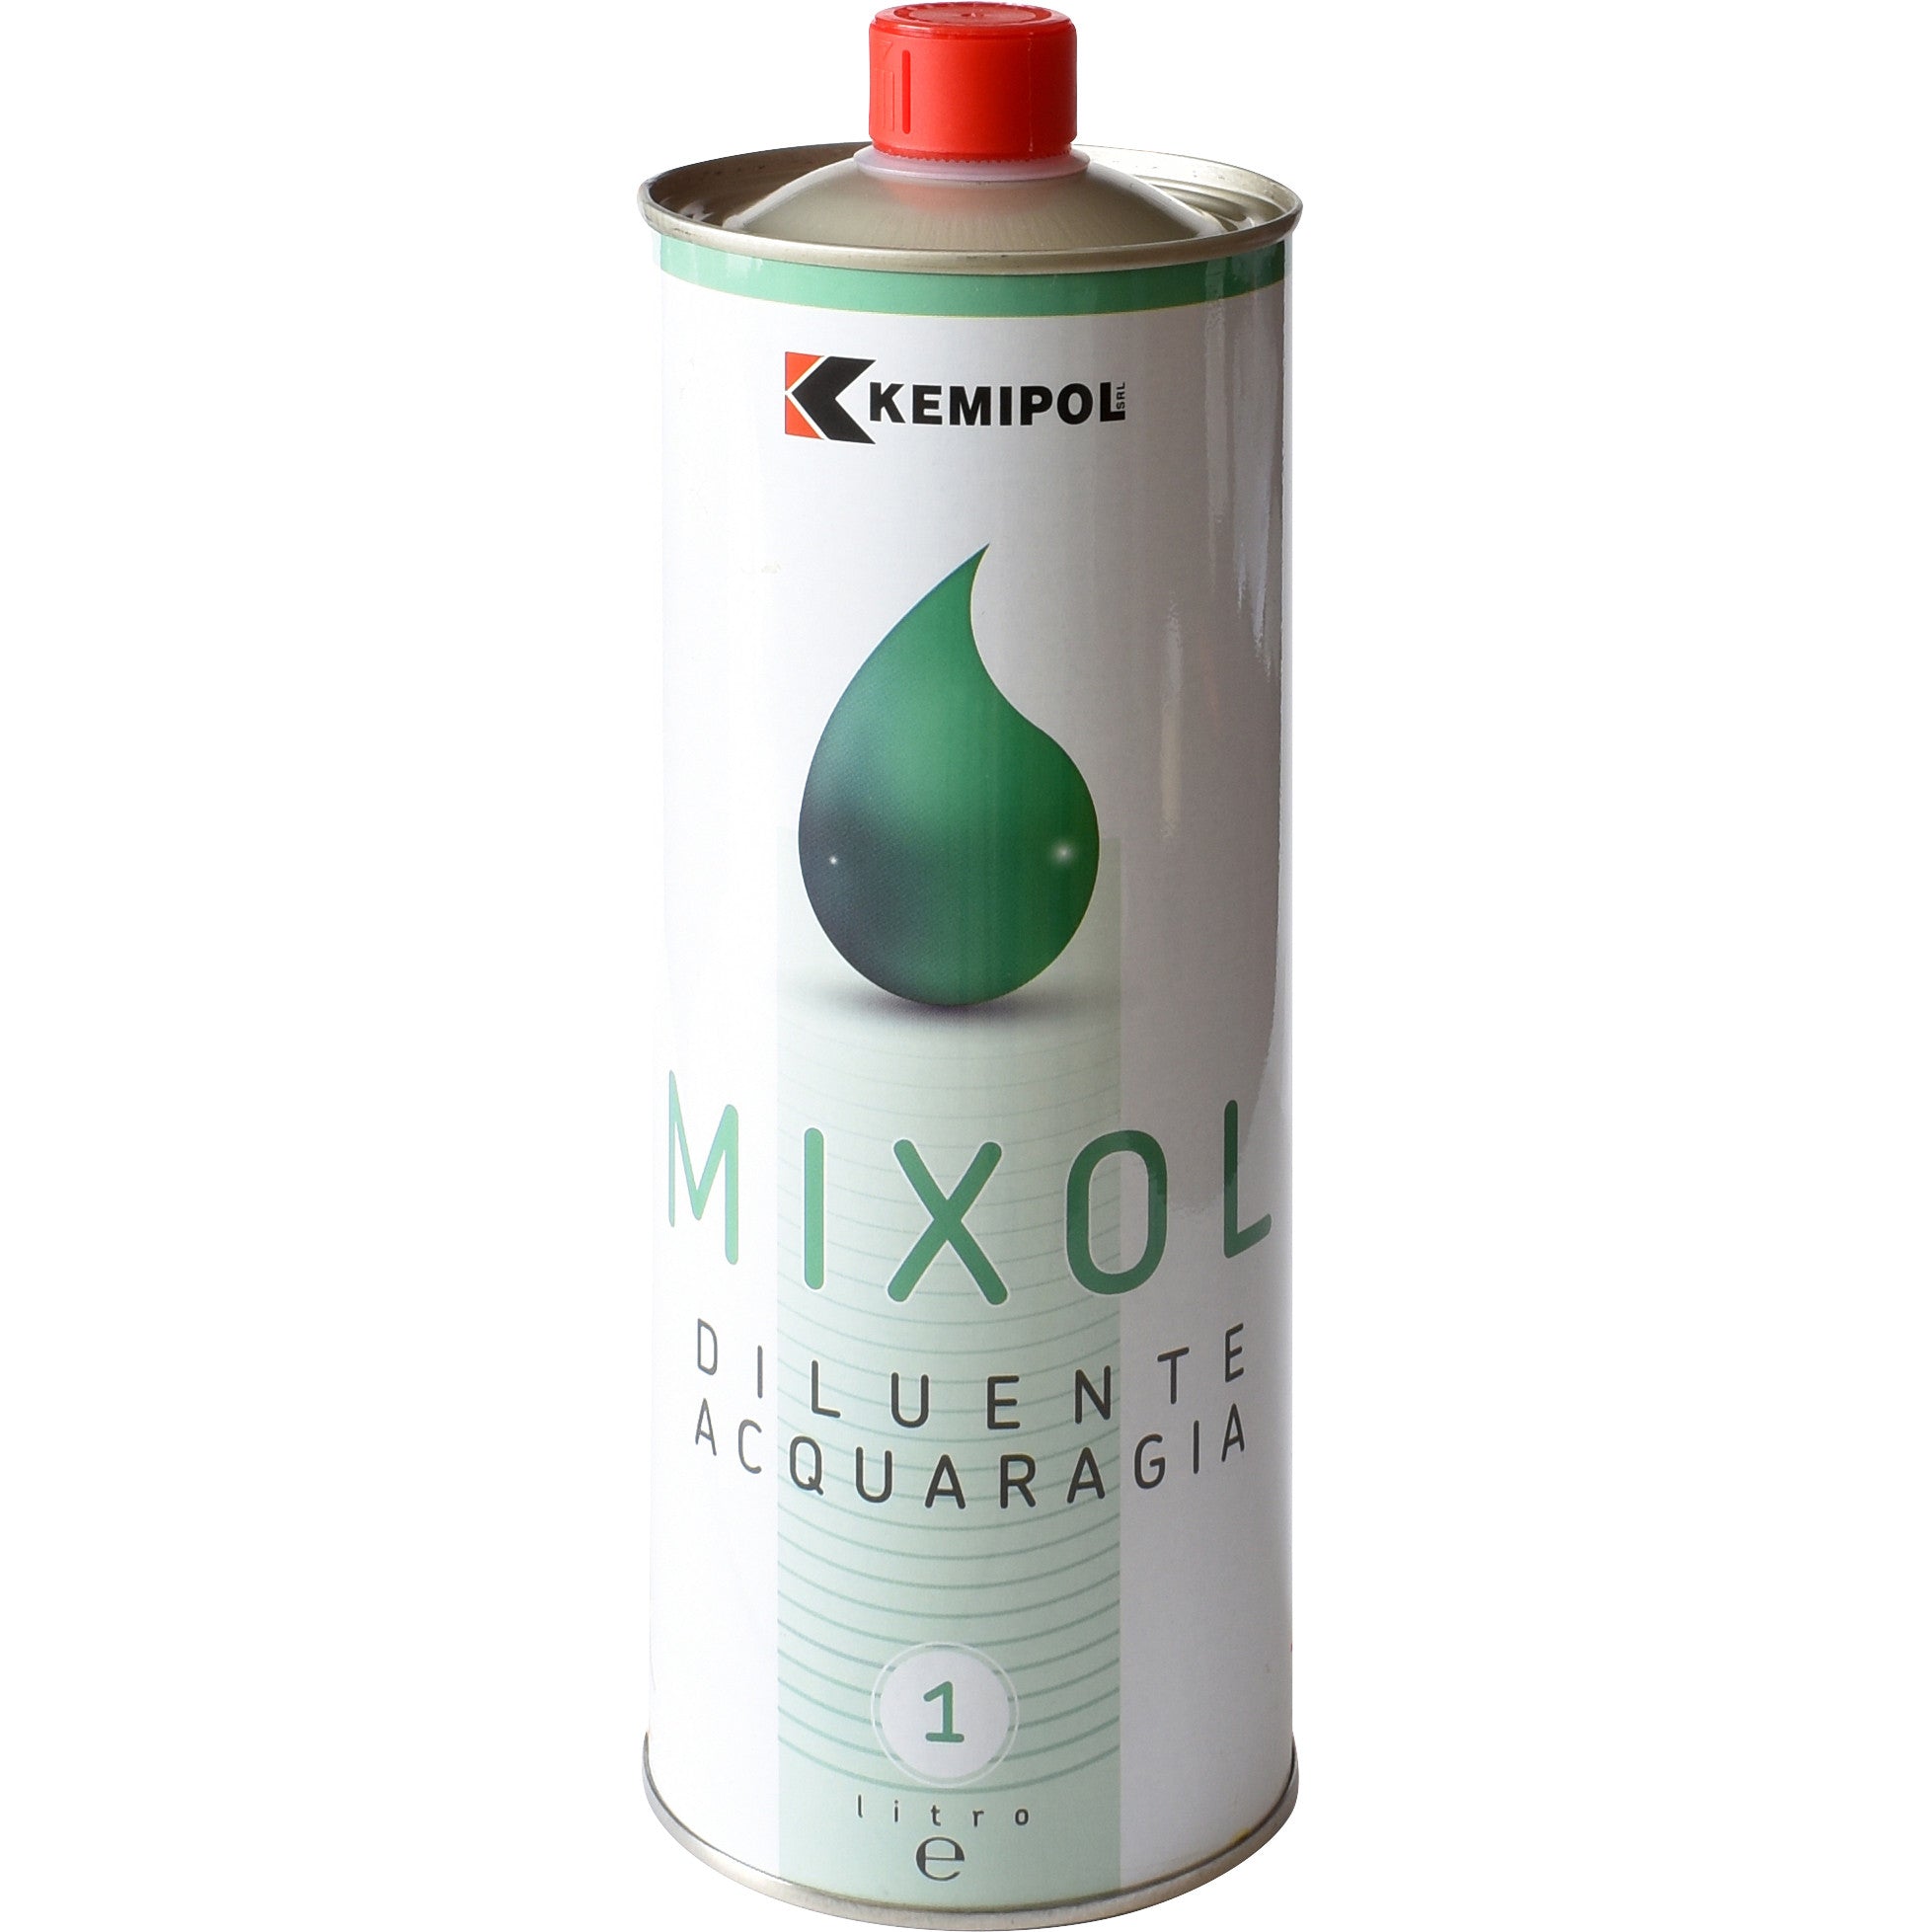 Acquaragia mixol lt. 1